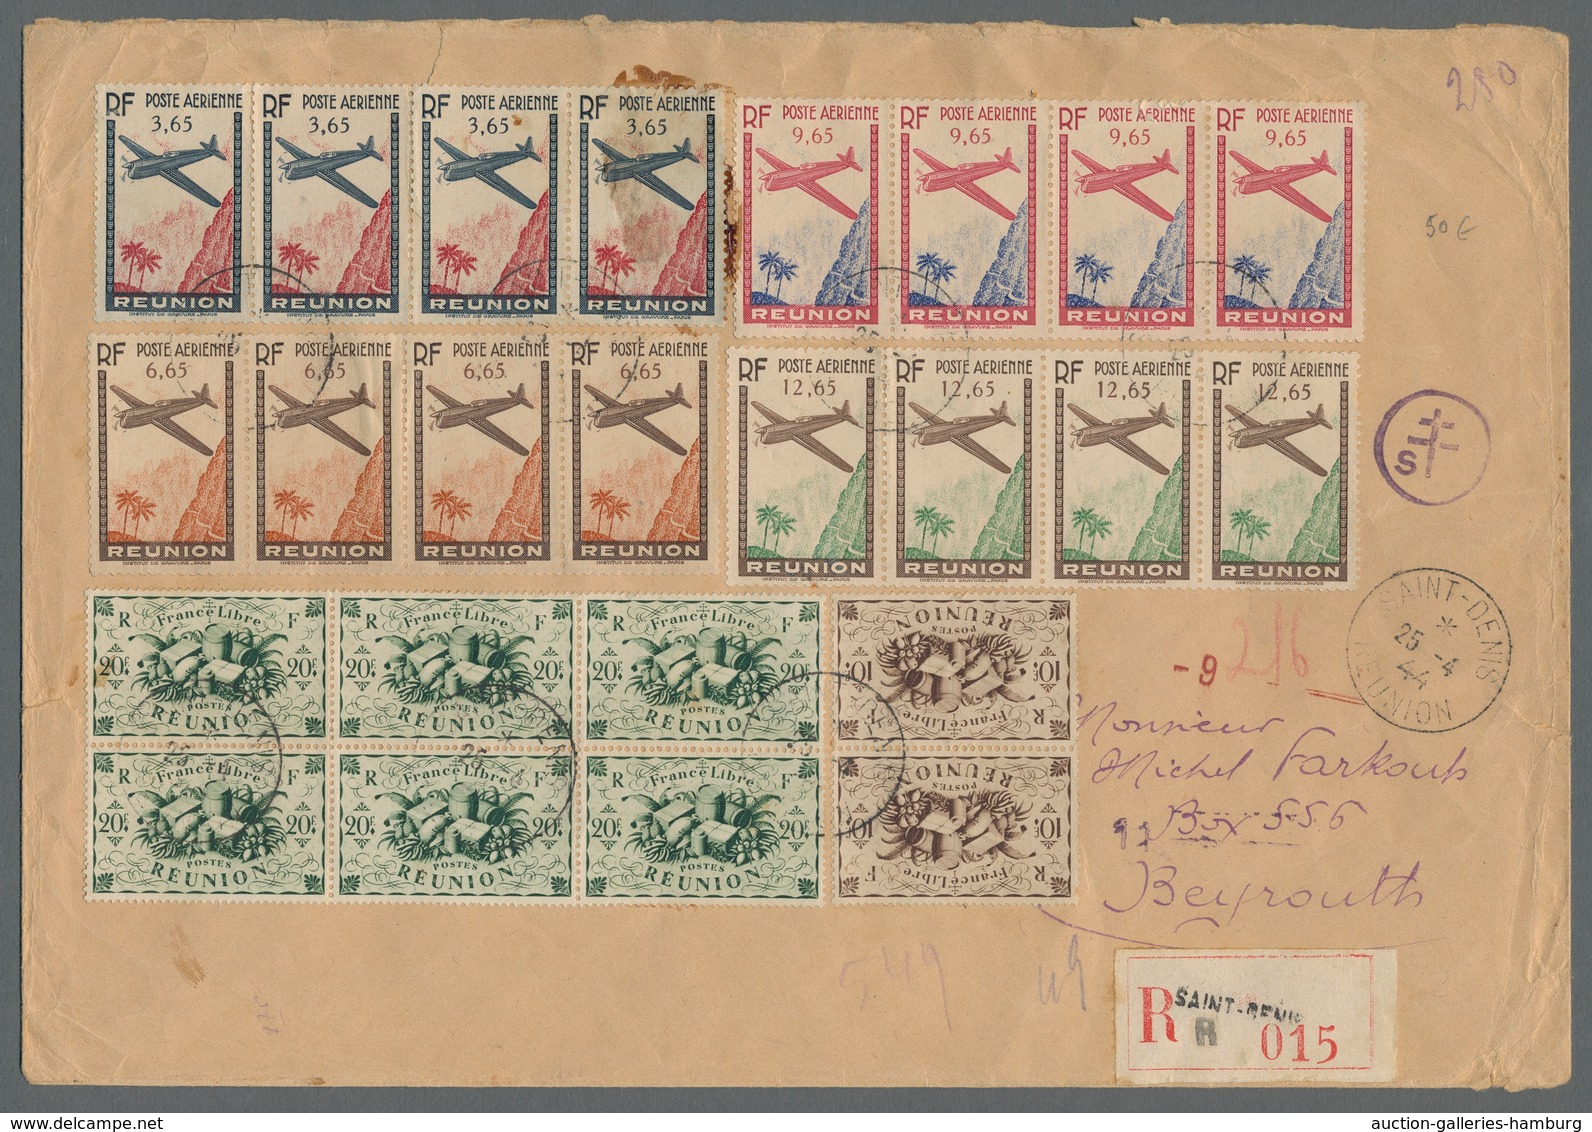 Reunion: 1917-75, reichhaltige Sammlung von 100 Briefen und Karten im Briefealbum, überwiegend Luftp